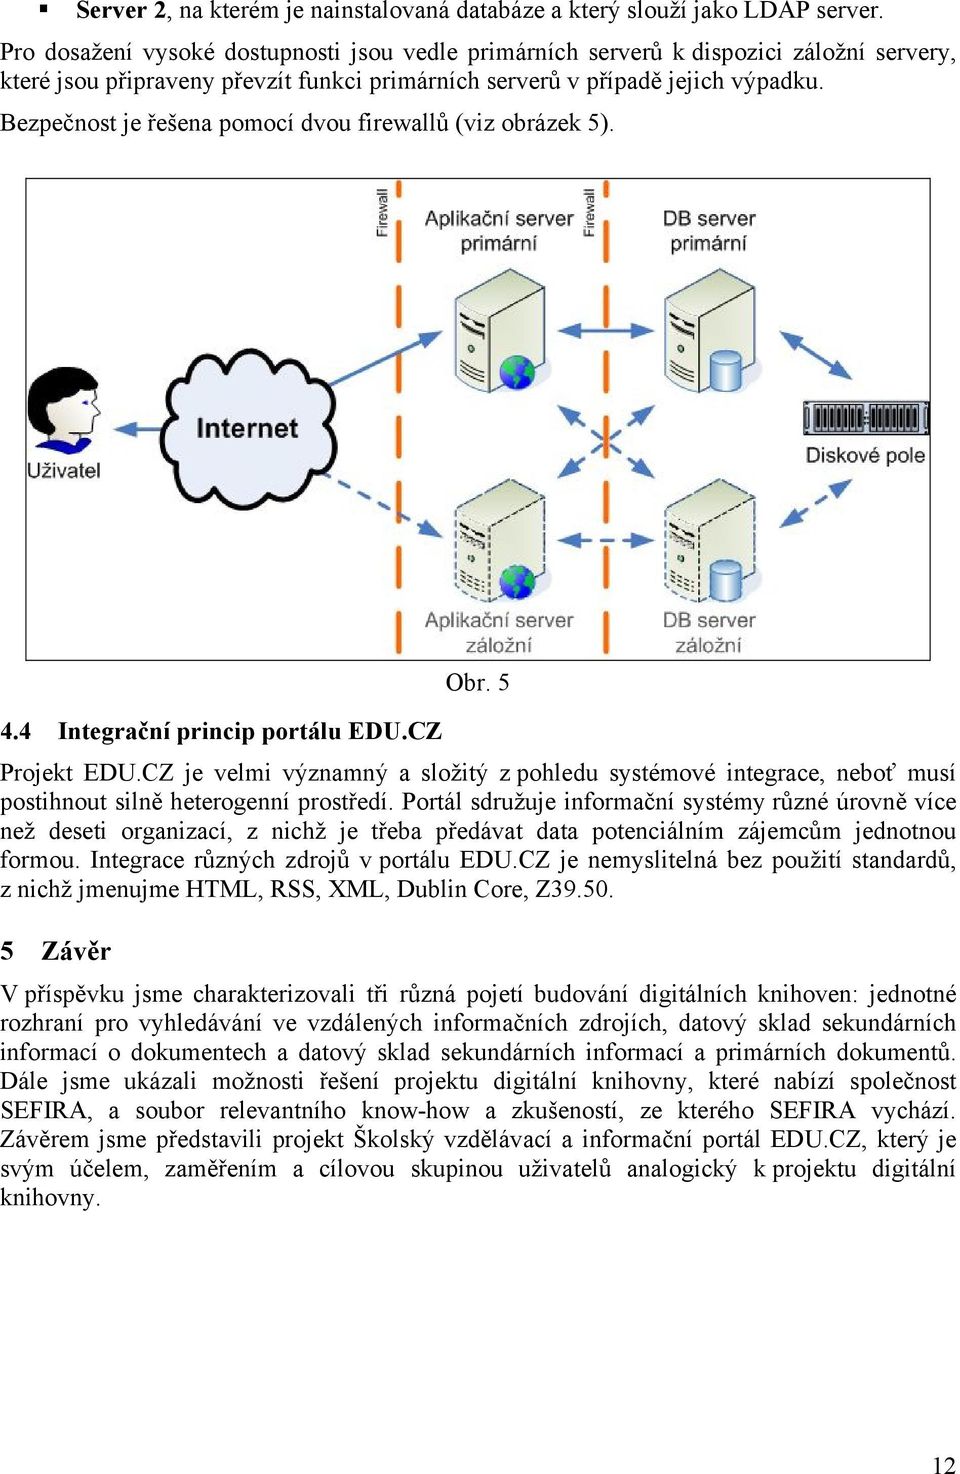 Bezpečnost je řešena pomocí dvou firewallů (viz obrázek 5). 4.4 Integrační princip portálu EDU.CZ Obr. 5 Projekt EDU.